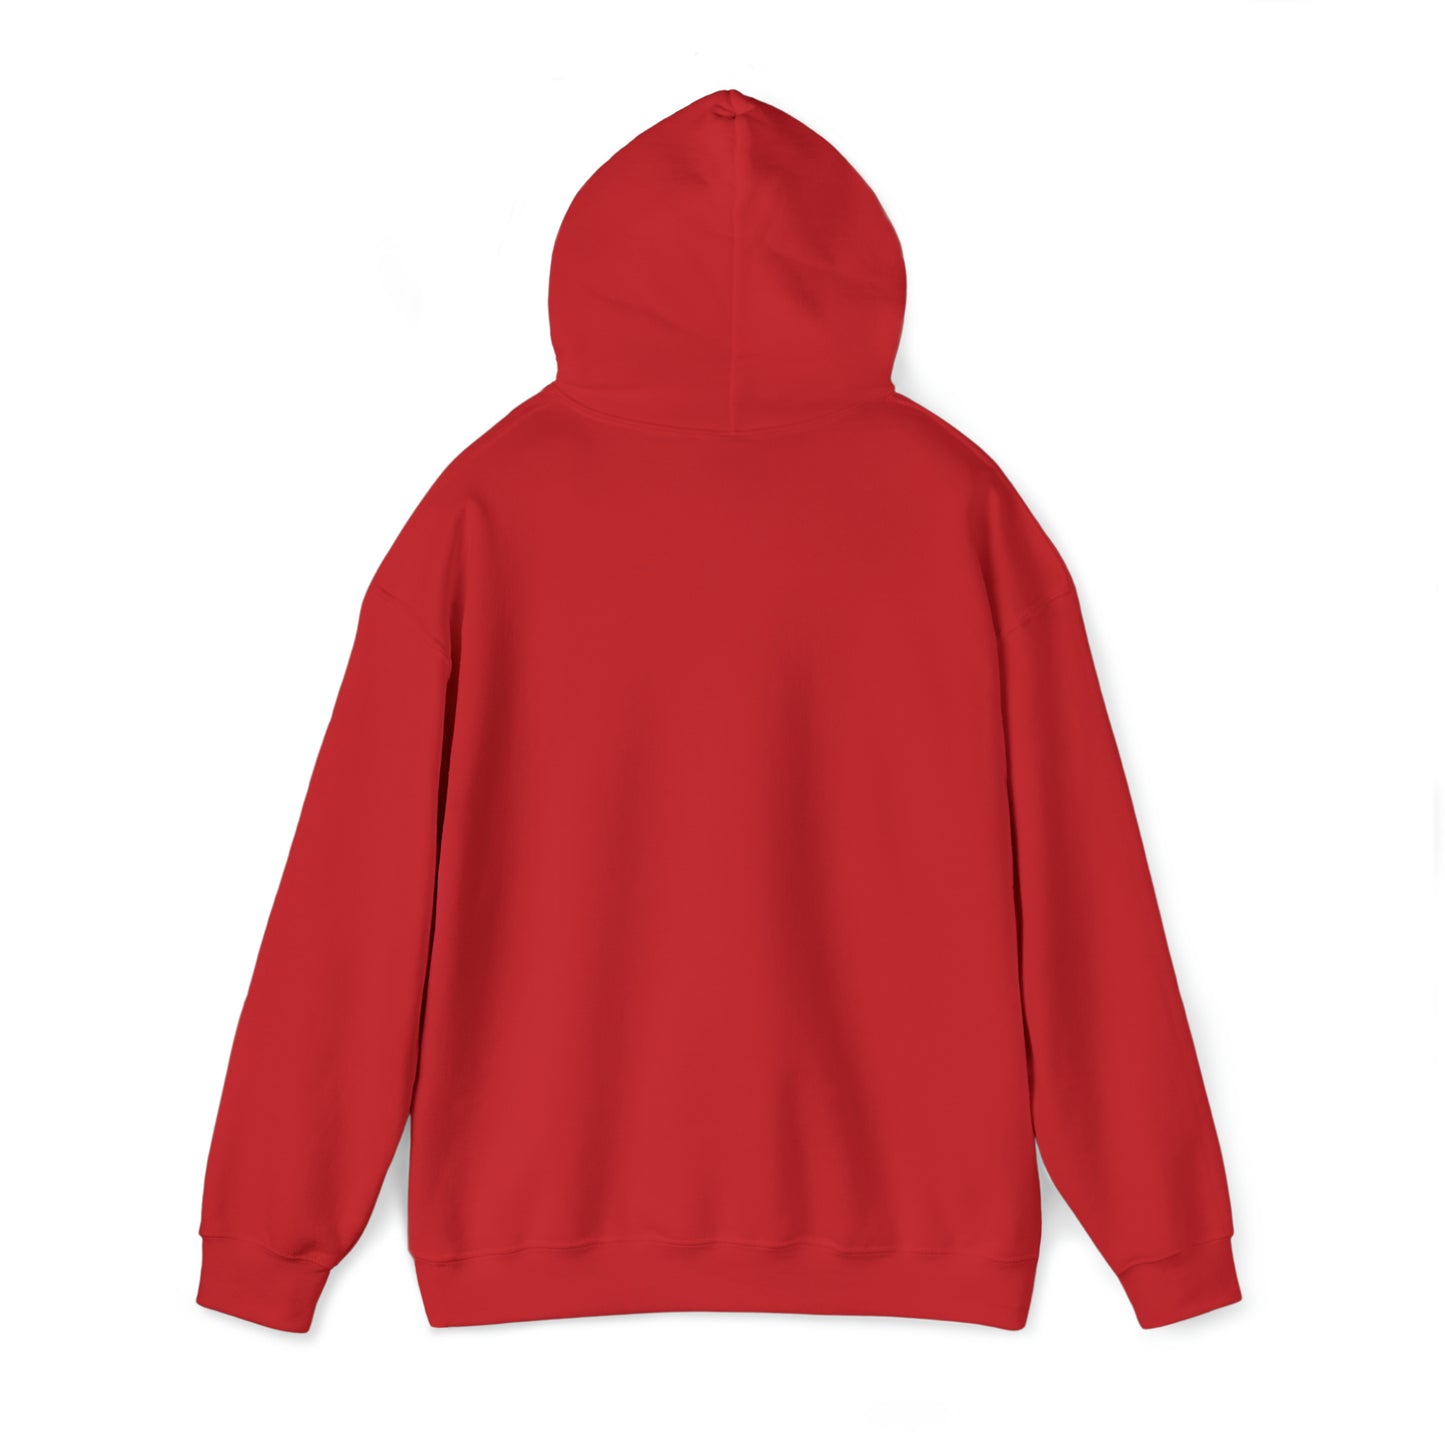 For God So Loved The World Unisex Heavy Blend™ Hooded Sweatshirt